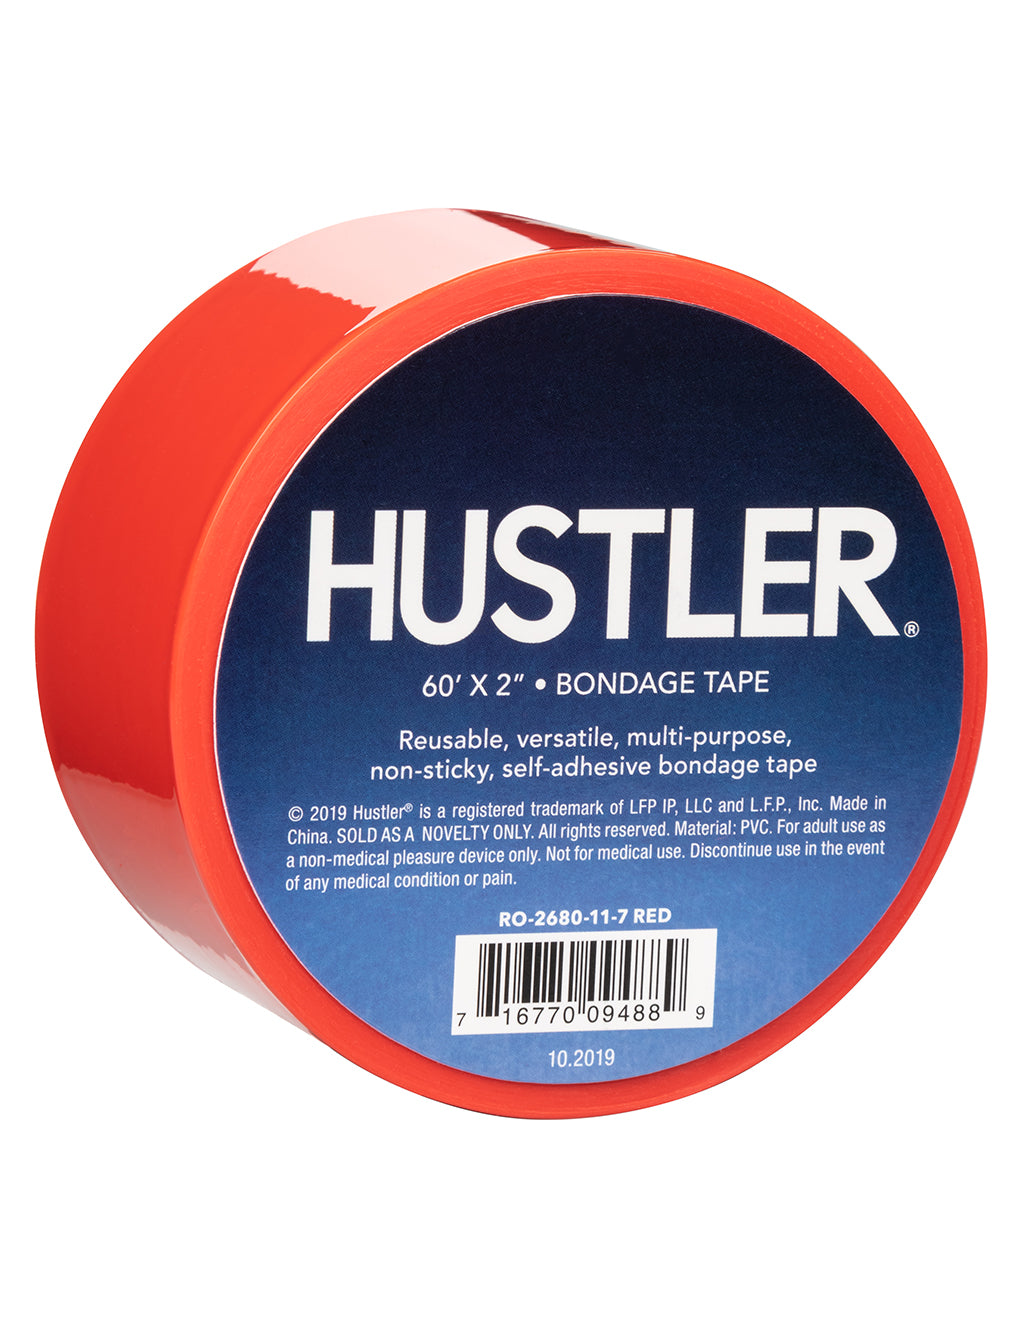 HUSTLER Bondage Tape- Red- Logo